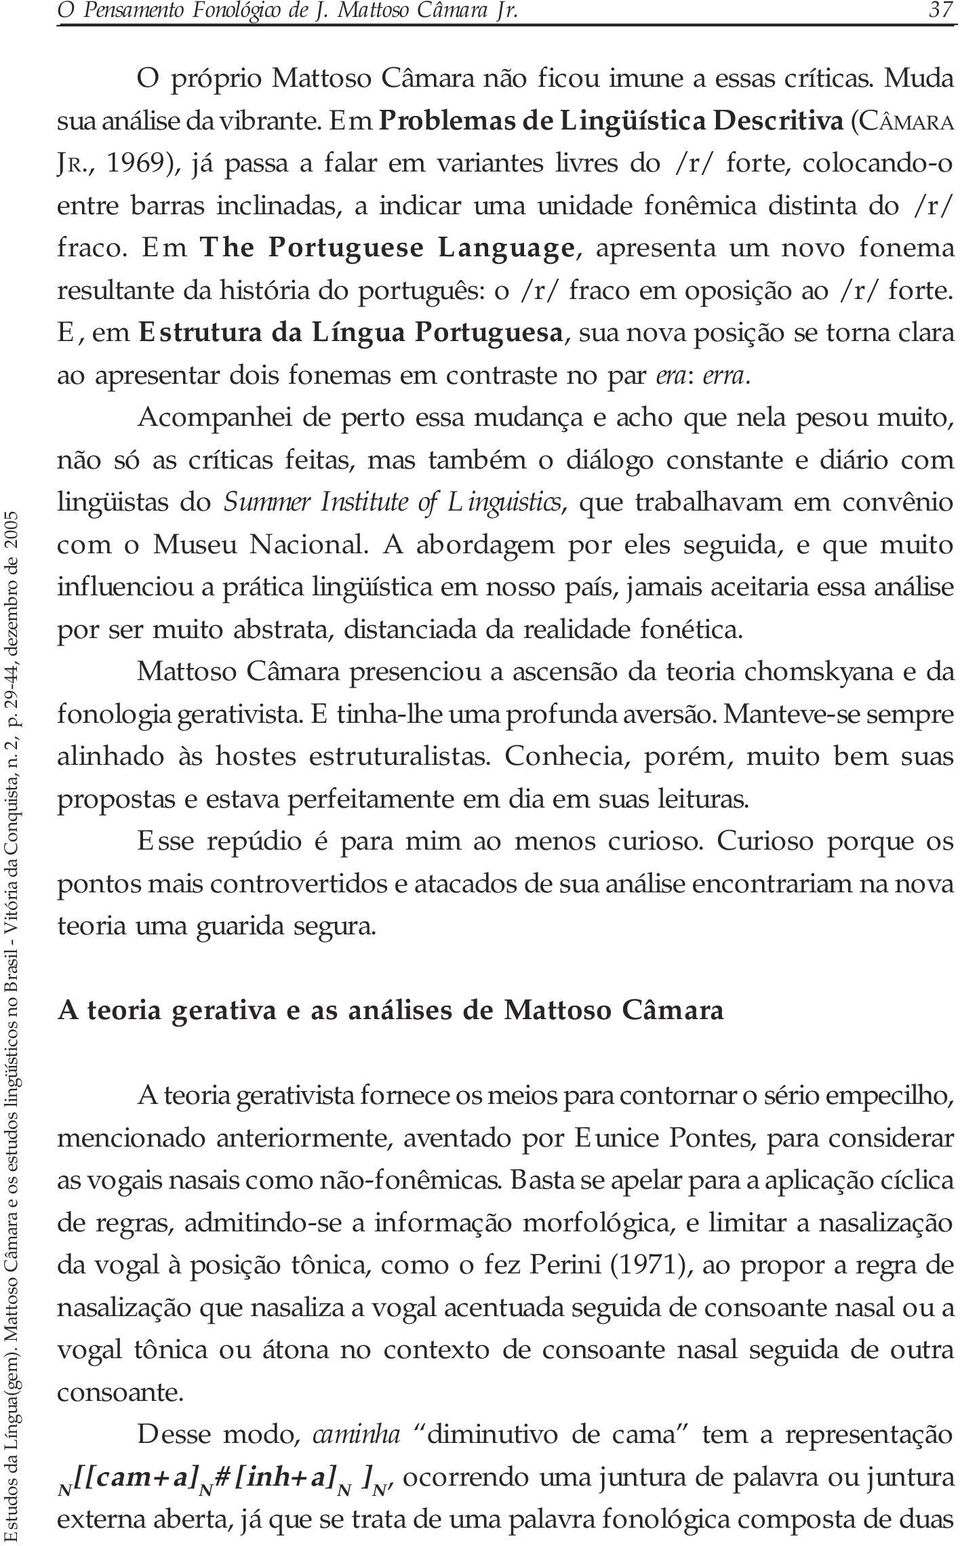 Em The Portuguese Language, apresenta um novo fonema resultante da história do português: o /r/ fraco em oposição ao /r/ forte.